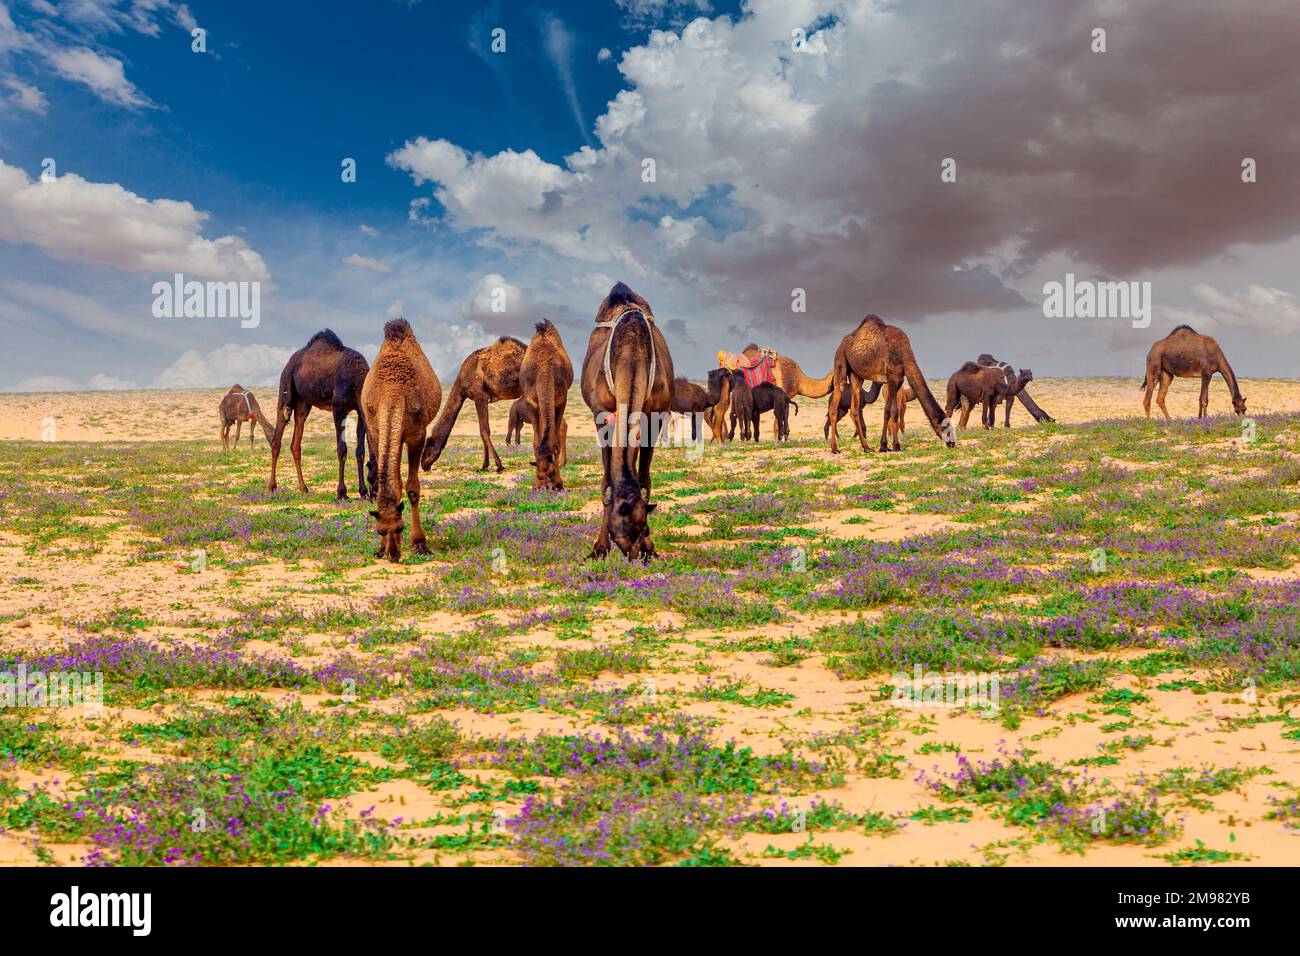 Herd of camels grazing in the desert, Saudi Arabia Stock Photo